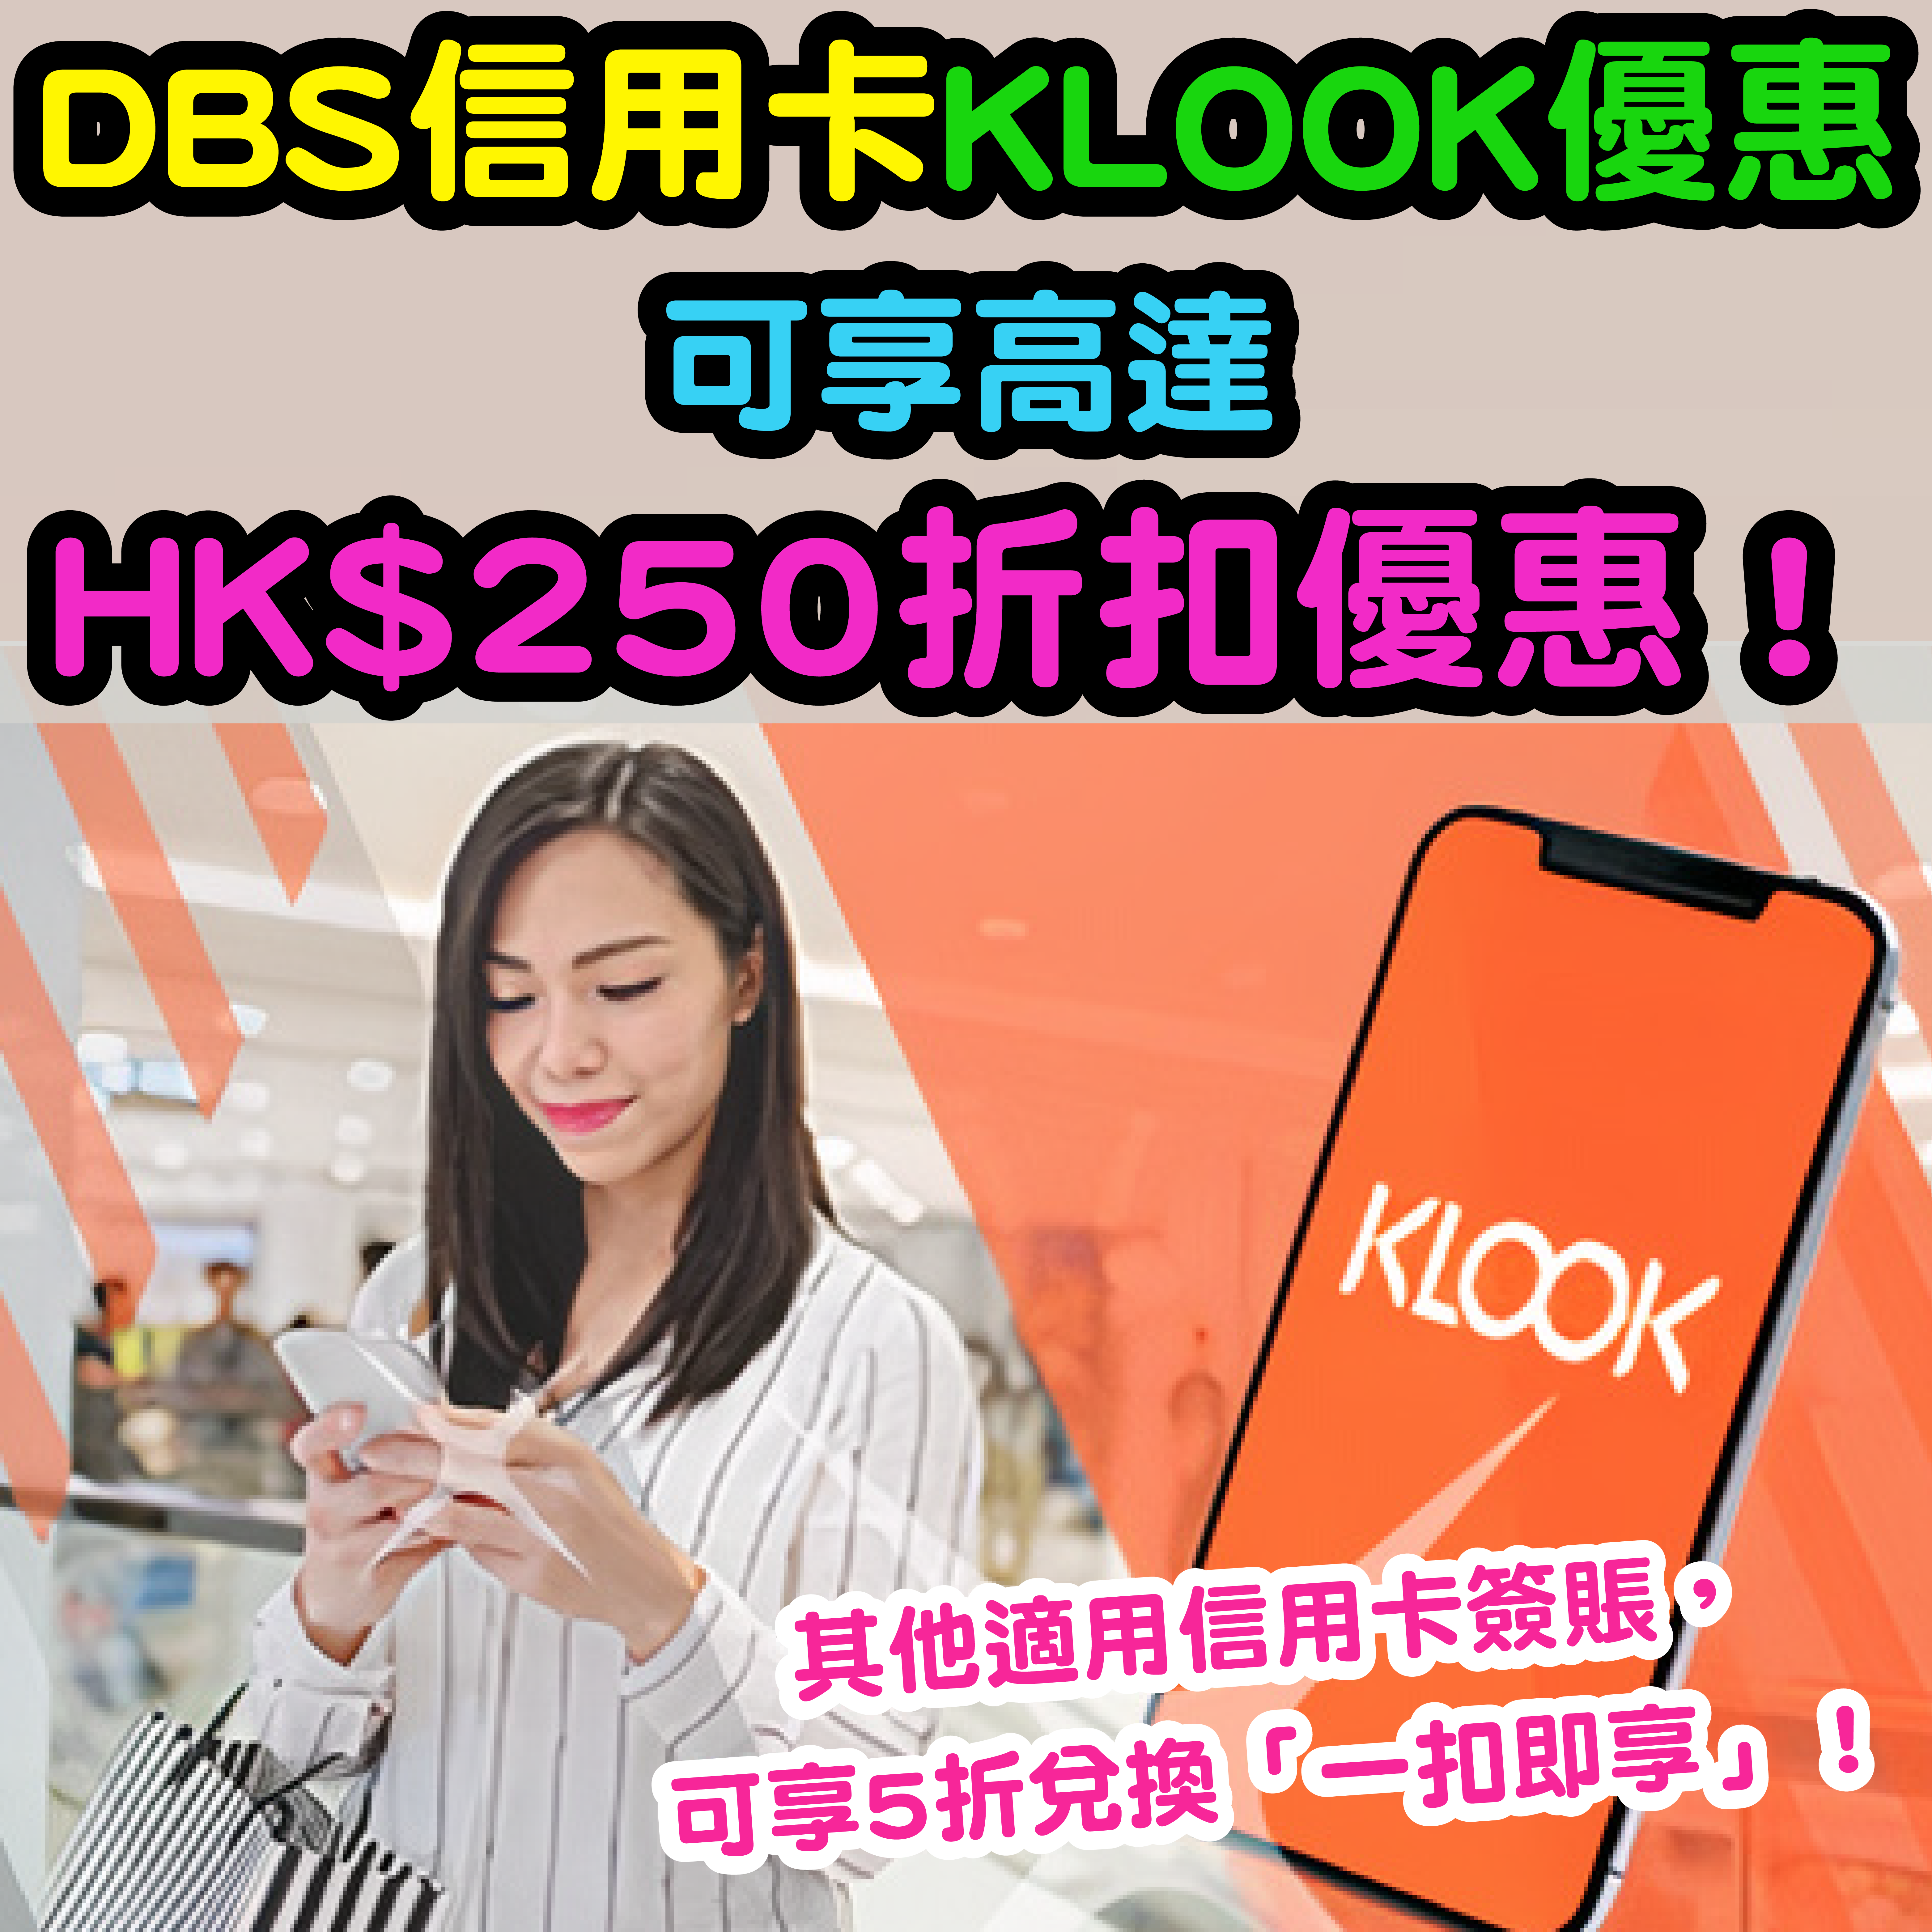 【DBS信用卡KLOOK優惠】可享高達HK$250折扣優惠！其他適用信用卡簽賬，可享5折兌換「一扣即享」！